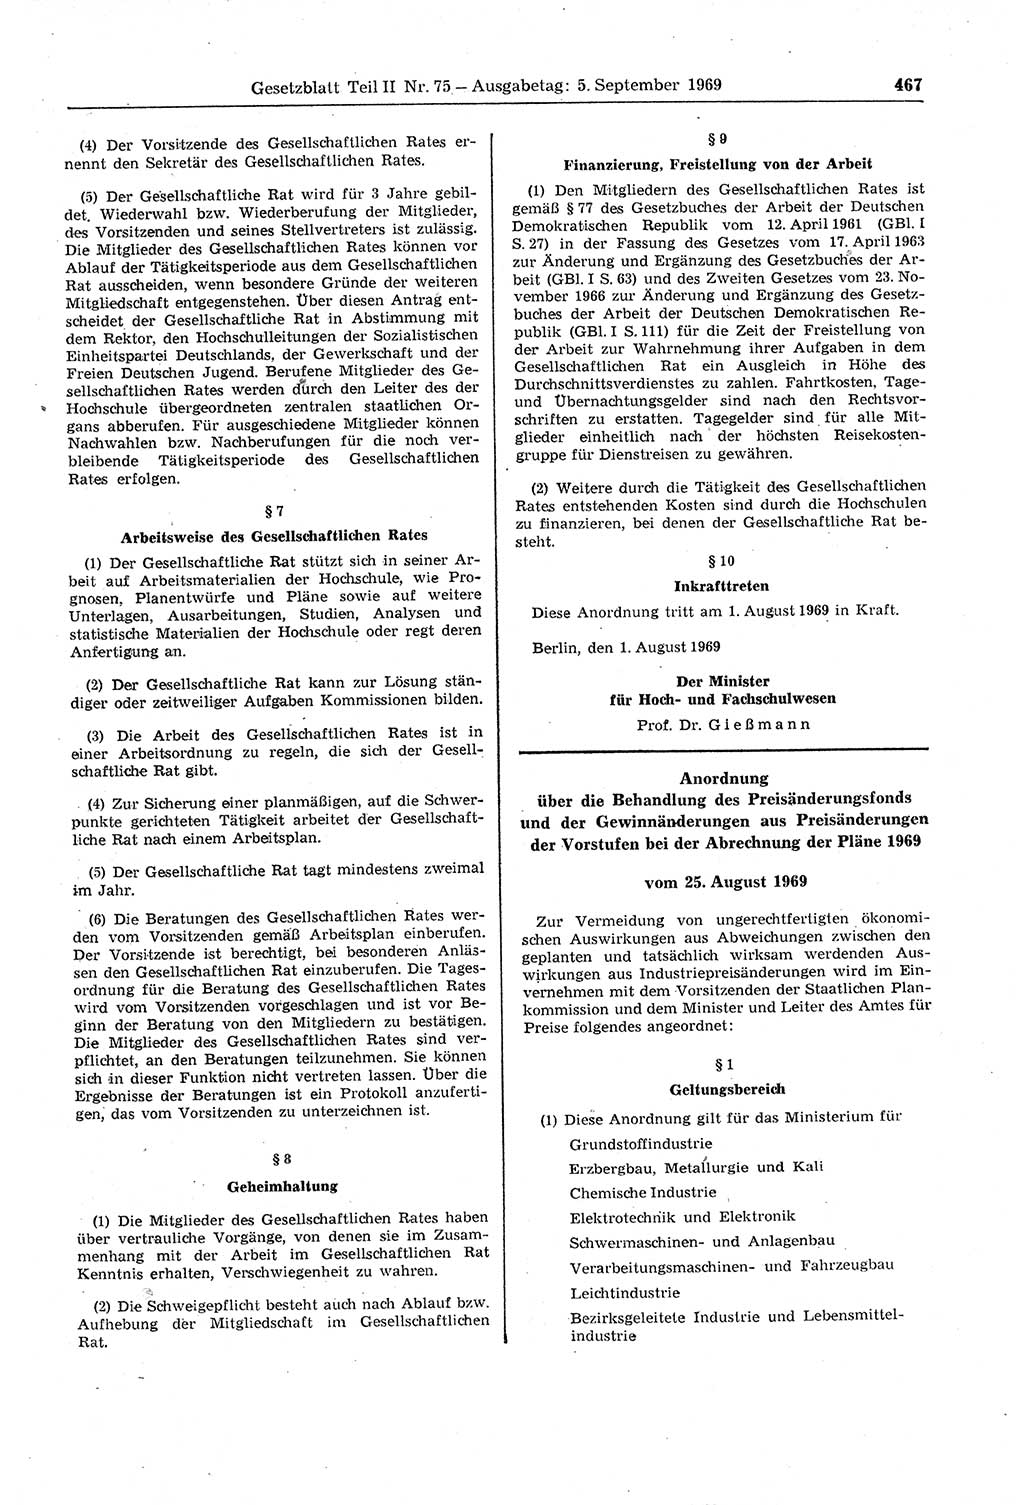 Gesetzblatt (GBl.) der Deutschen Demokratischen Republik (DDR) Teil ⅠⅠ 1969, Seite 467 (GBl. DDR ⅠⅠ 1969, S. 467)